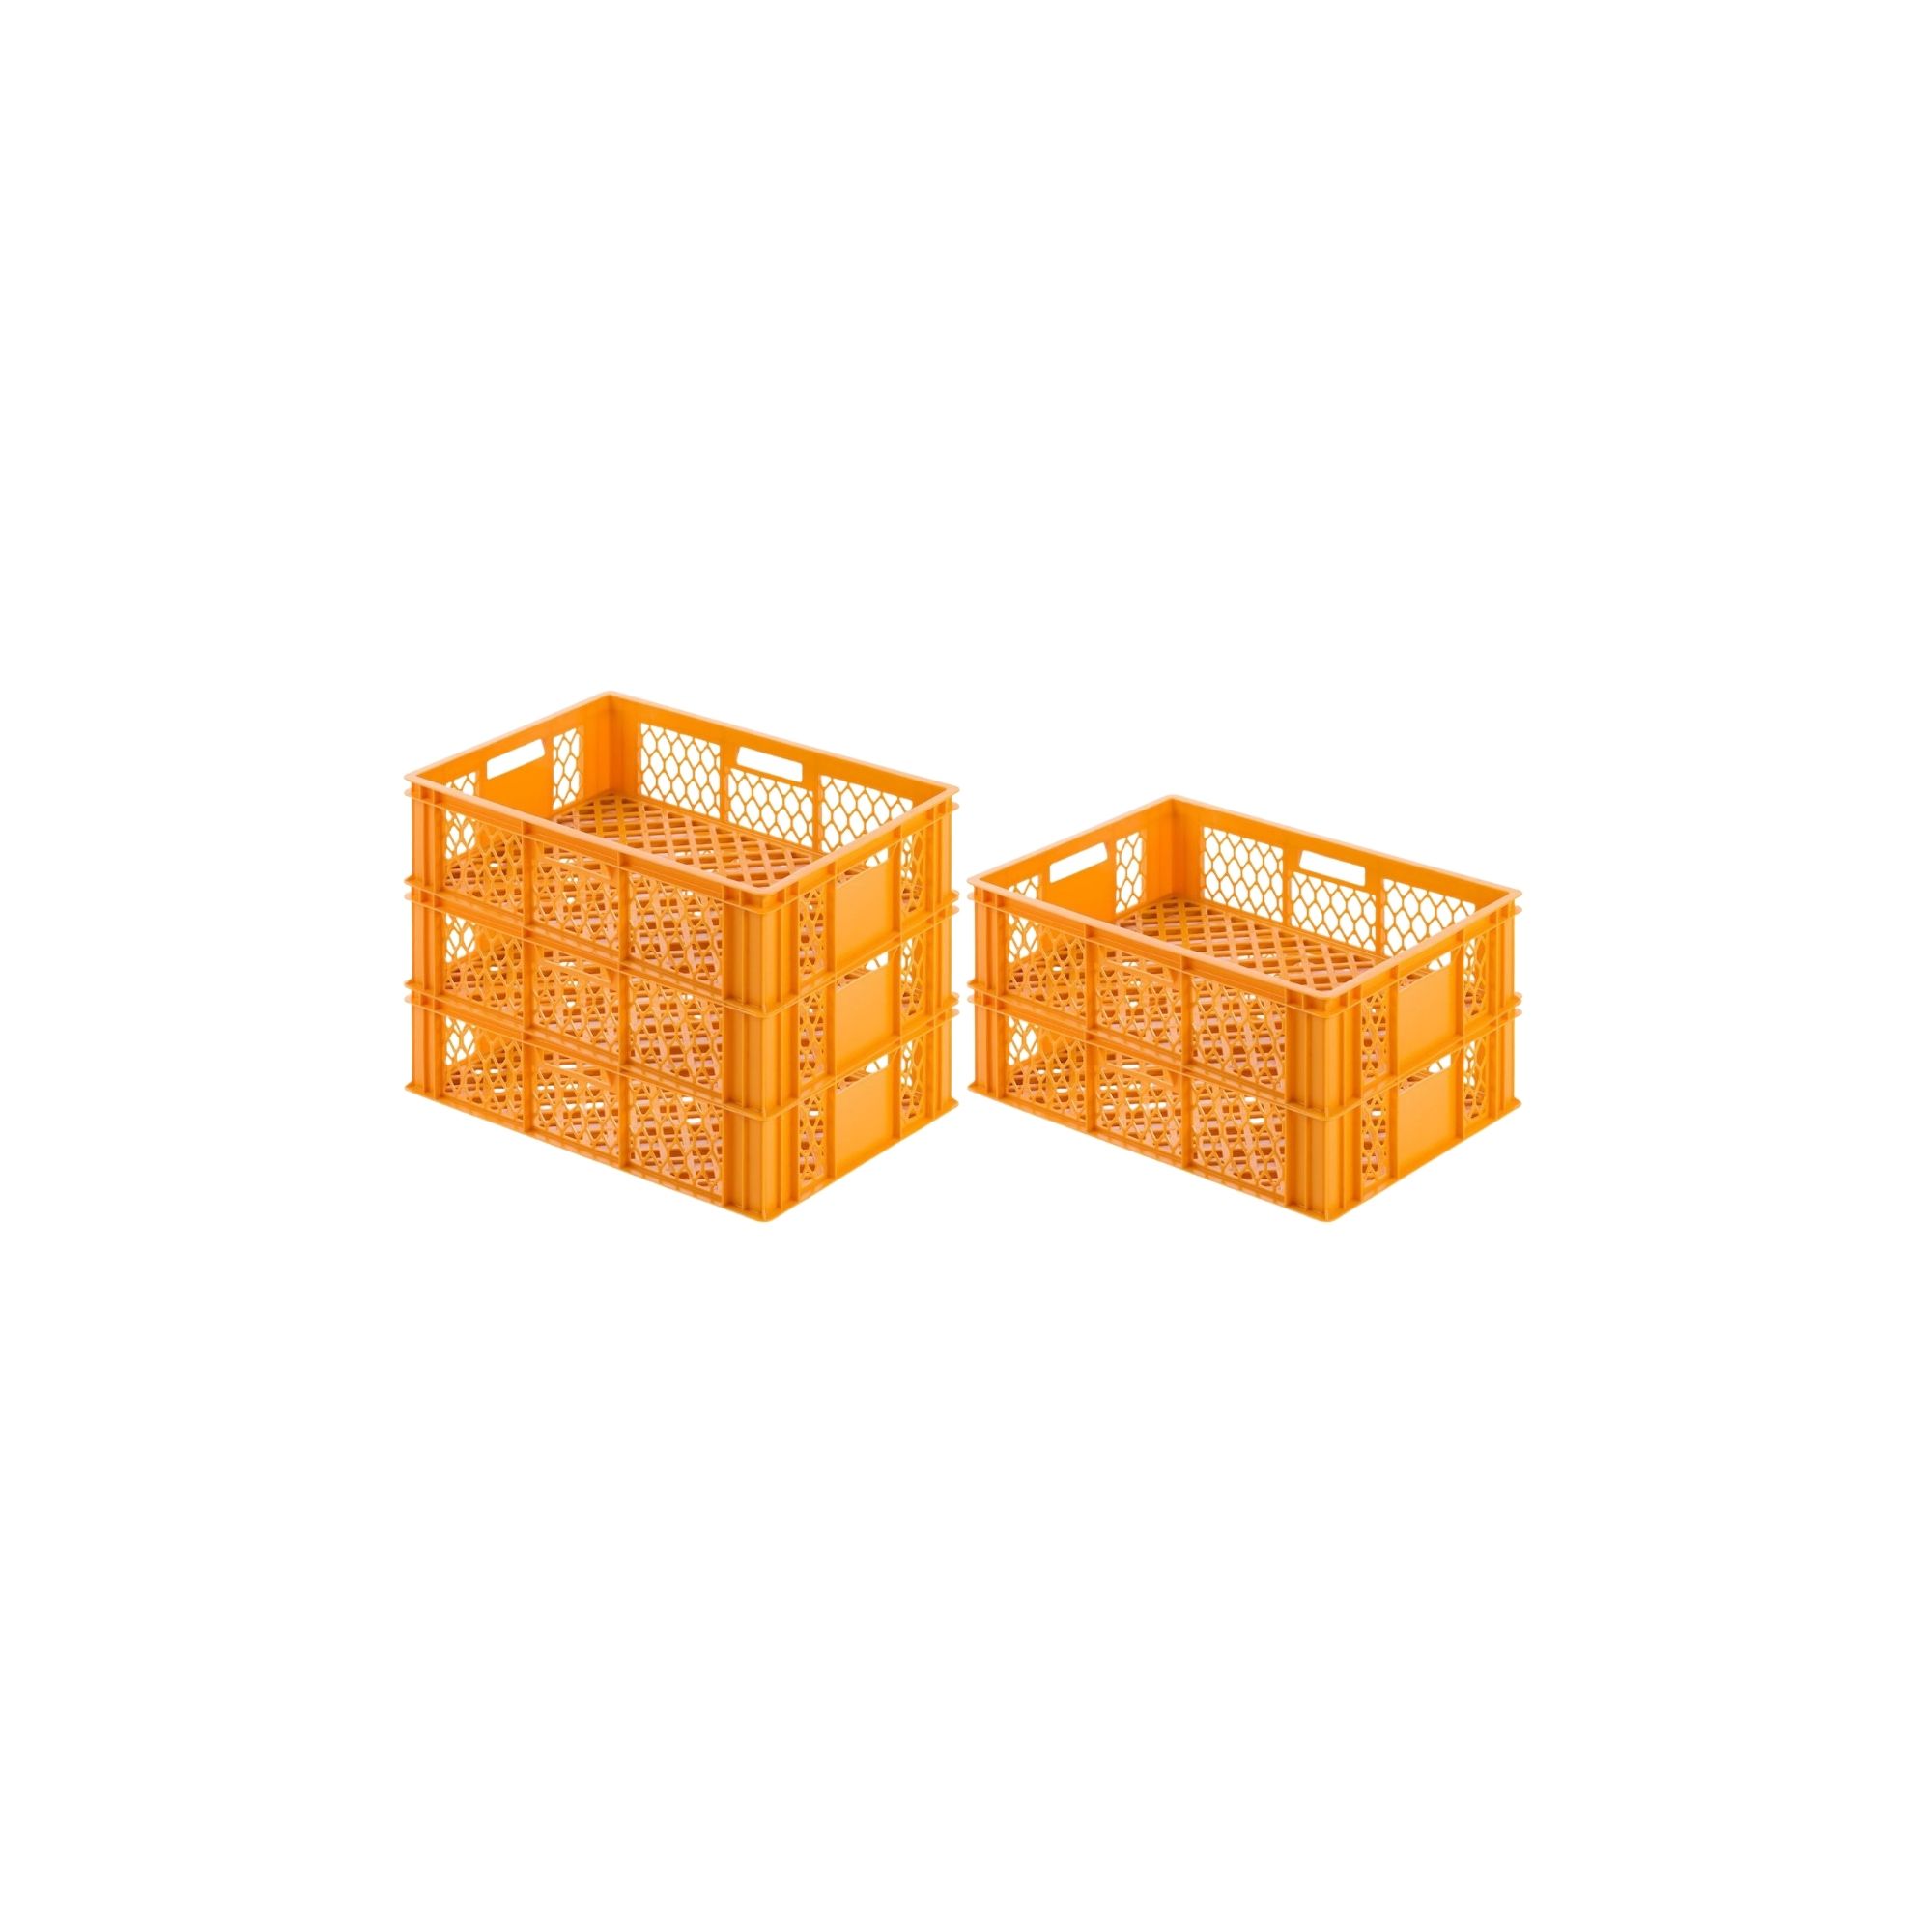 SuperSparSet 5x Eurobehälter Bäcker- & Konditorenkasten | HxBxT 17,1x40x60 | 33 Liter | Gelb-Orange | Brötchenkiste, stapelbare Bäckerkiste